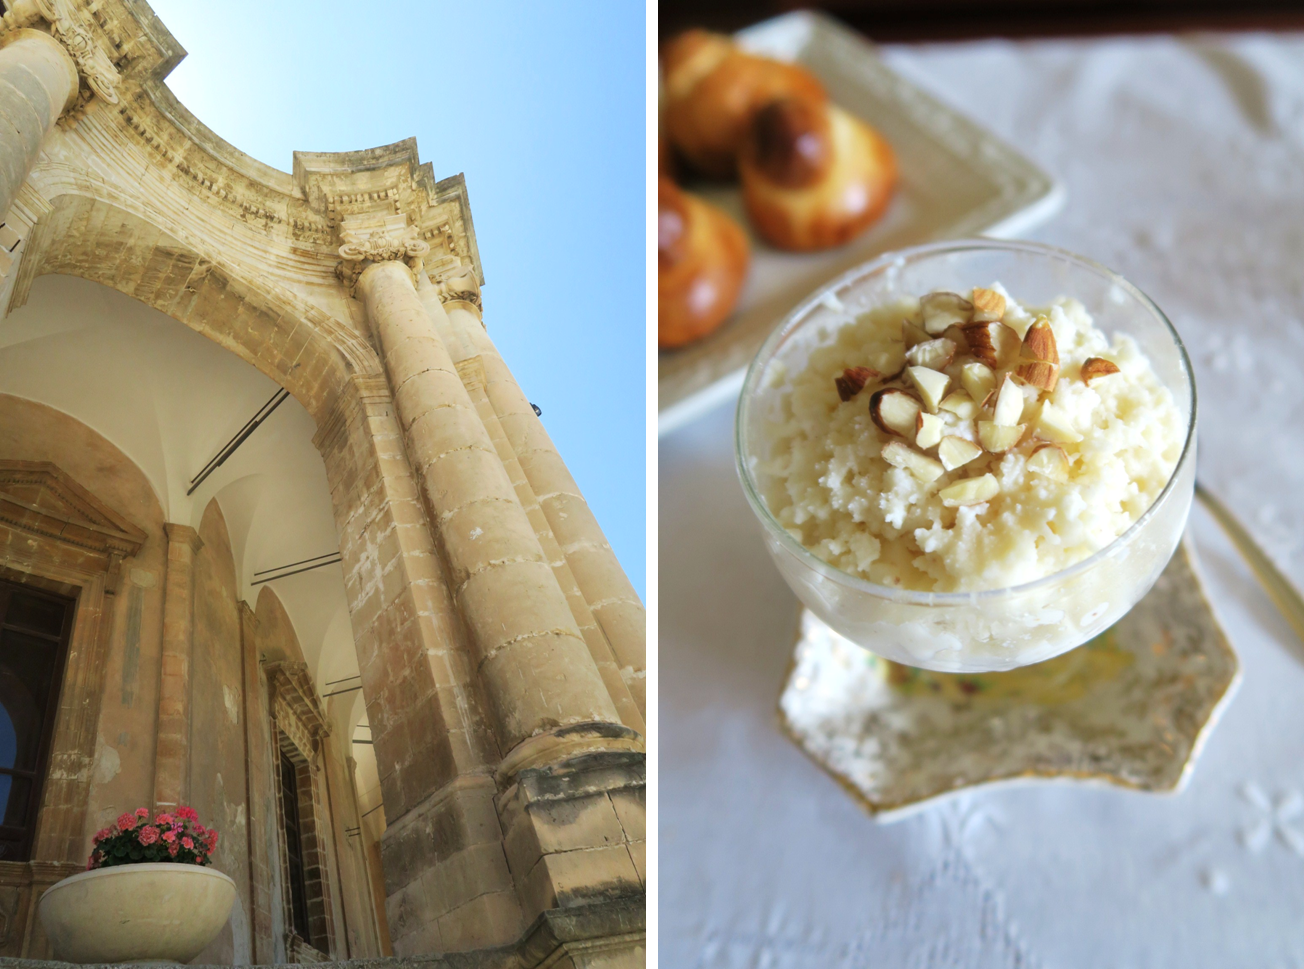 Caffe Sicilia, Noto, Sicily, Italy - Restaurant known for almond granita  breakfast